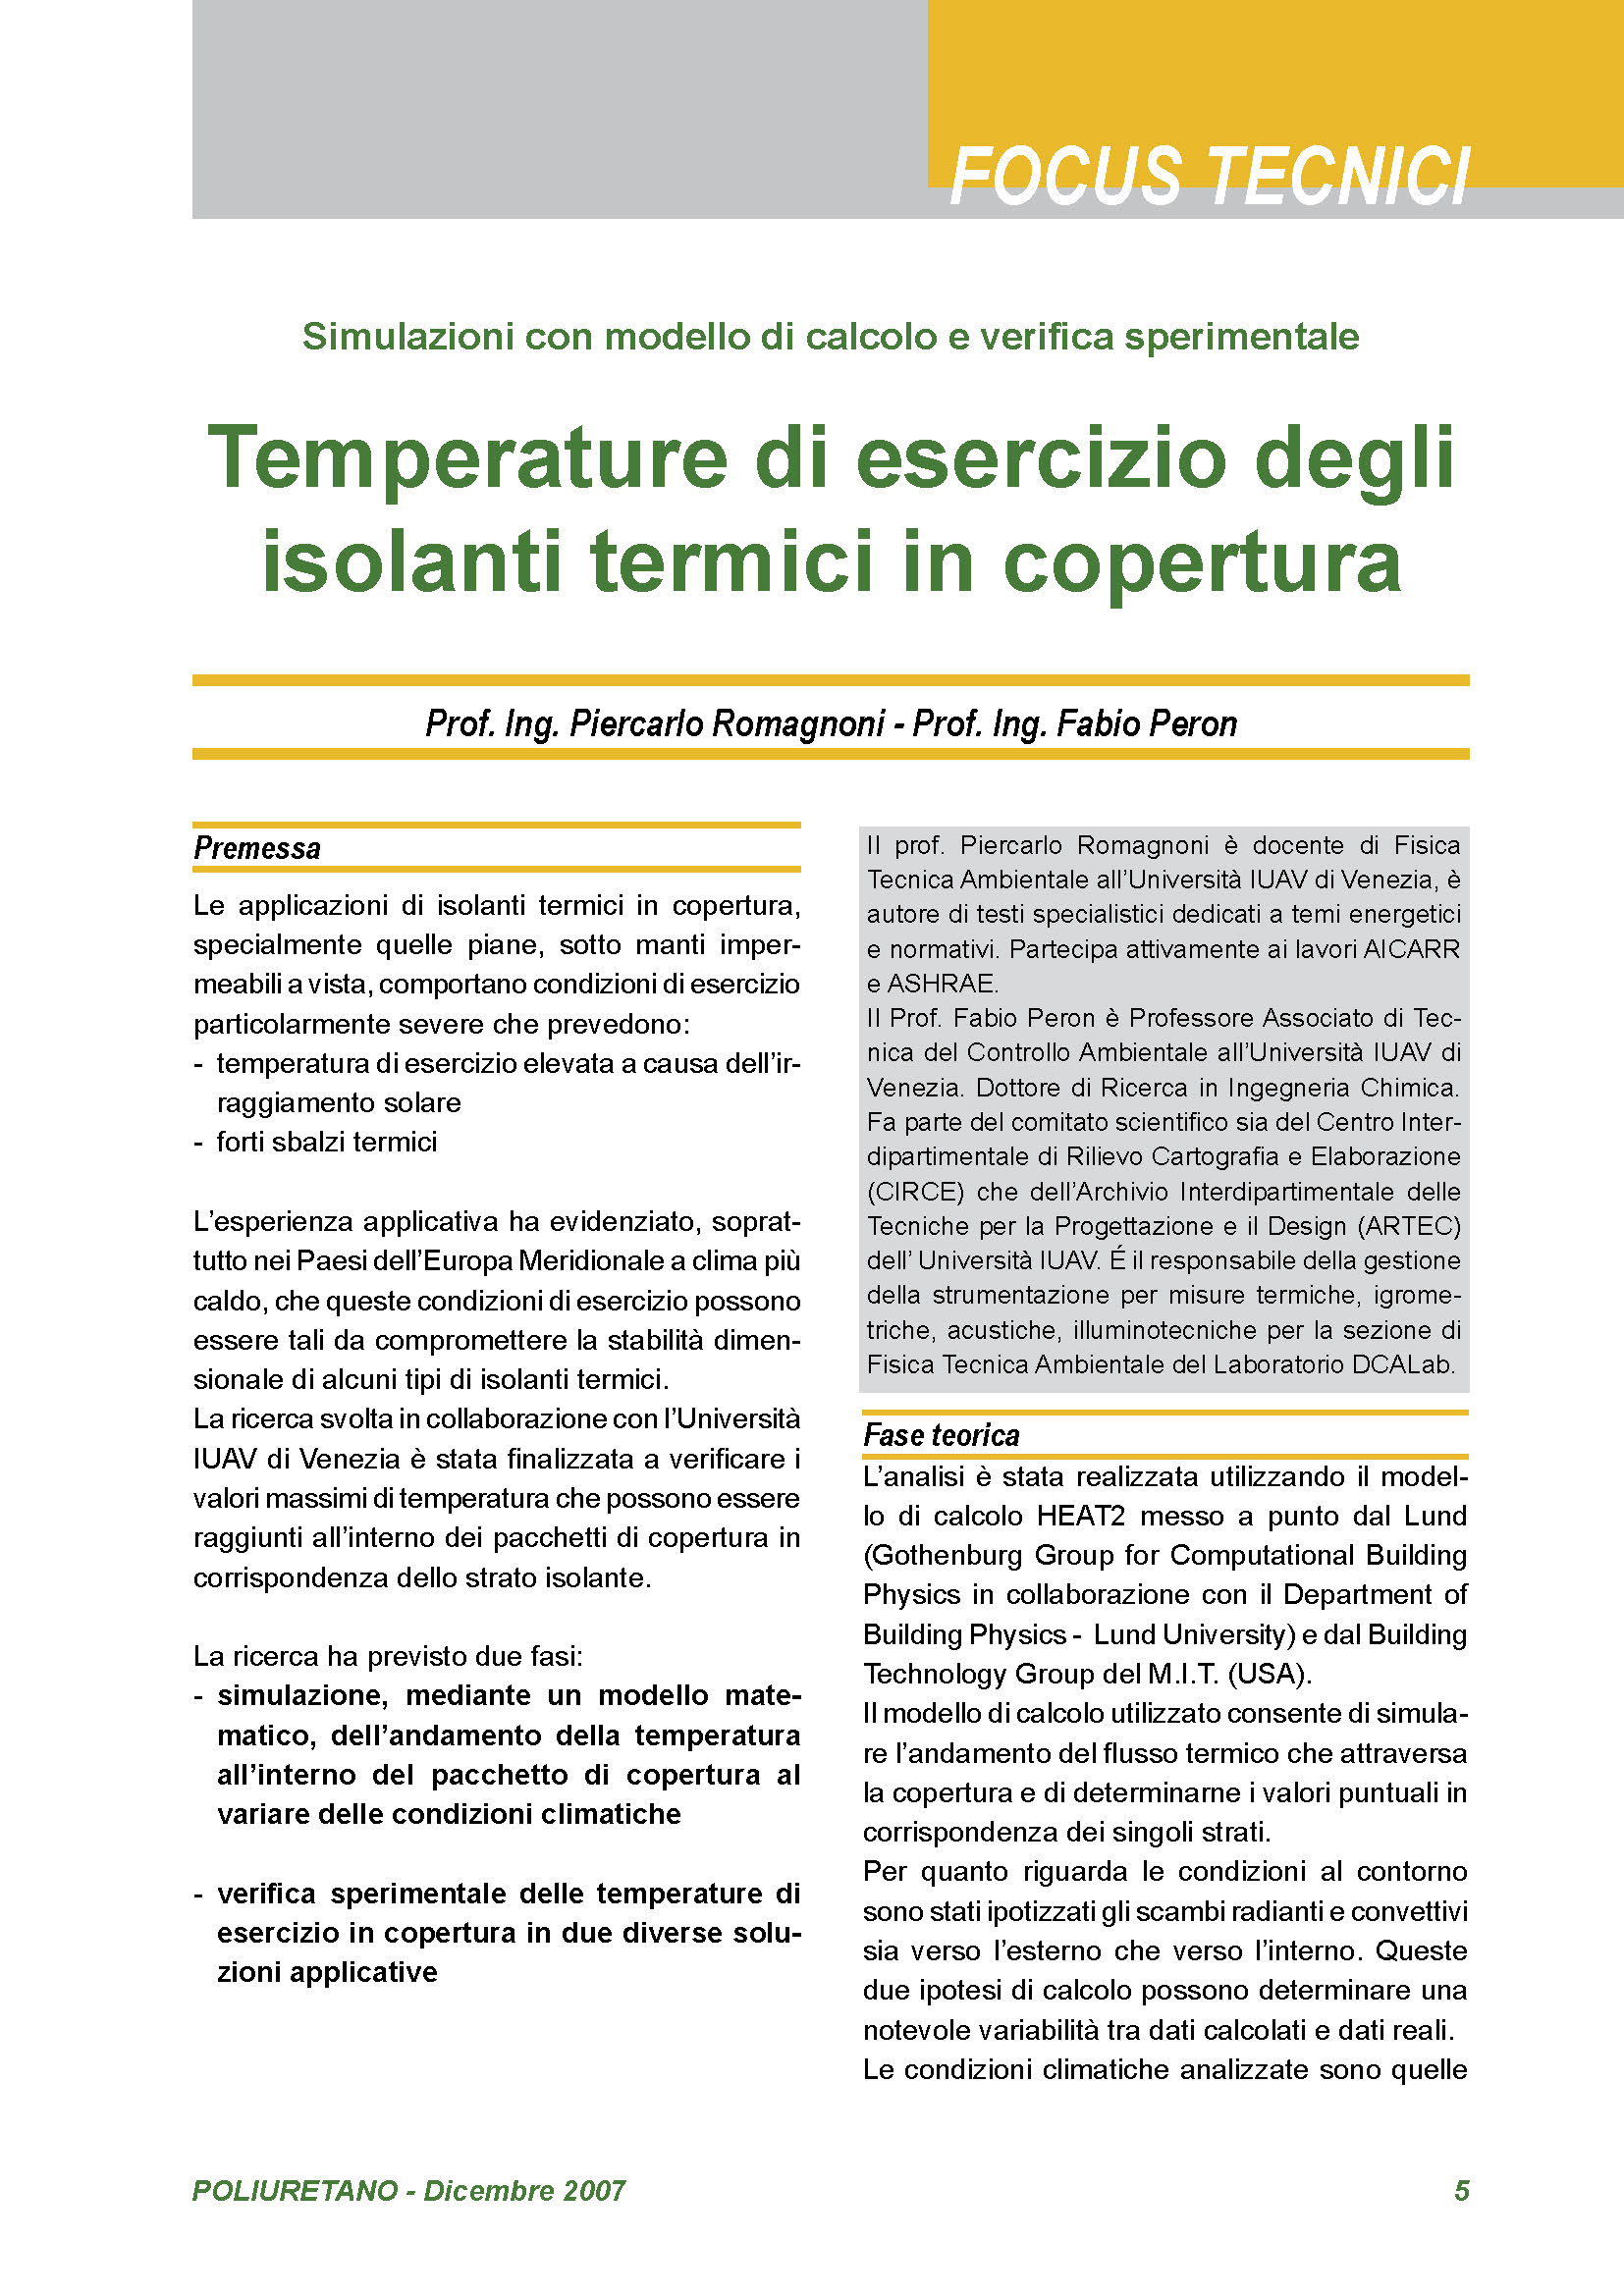 Temperature di esercizio degli isolanti termici in copertura